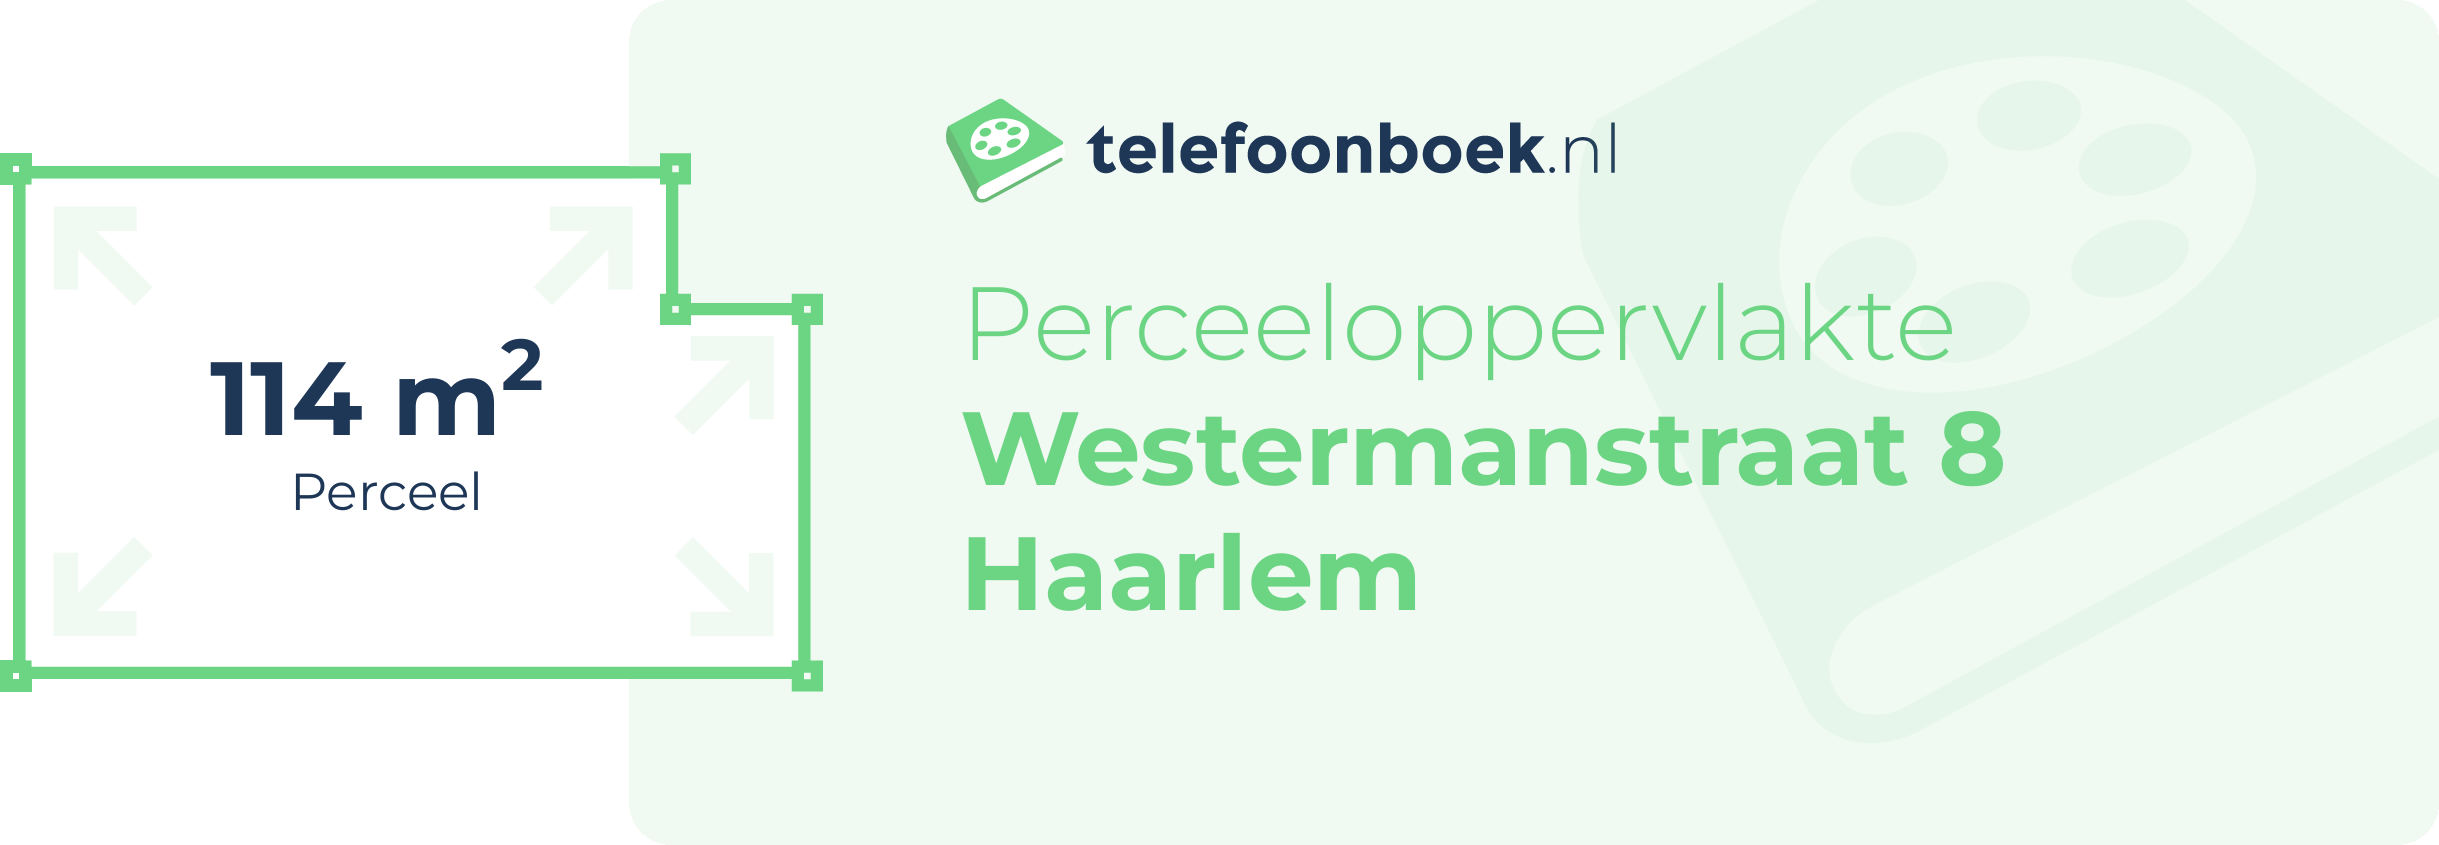 Perceeloppervlakte Westermanstraat 8 Haarlem